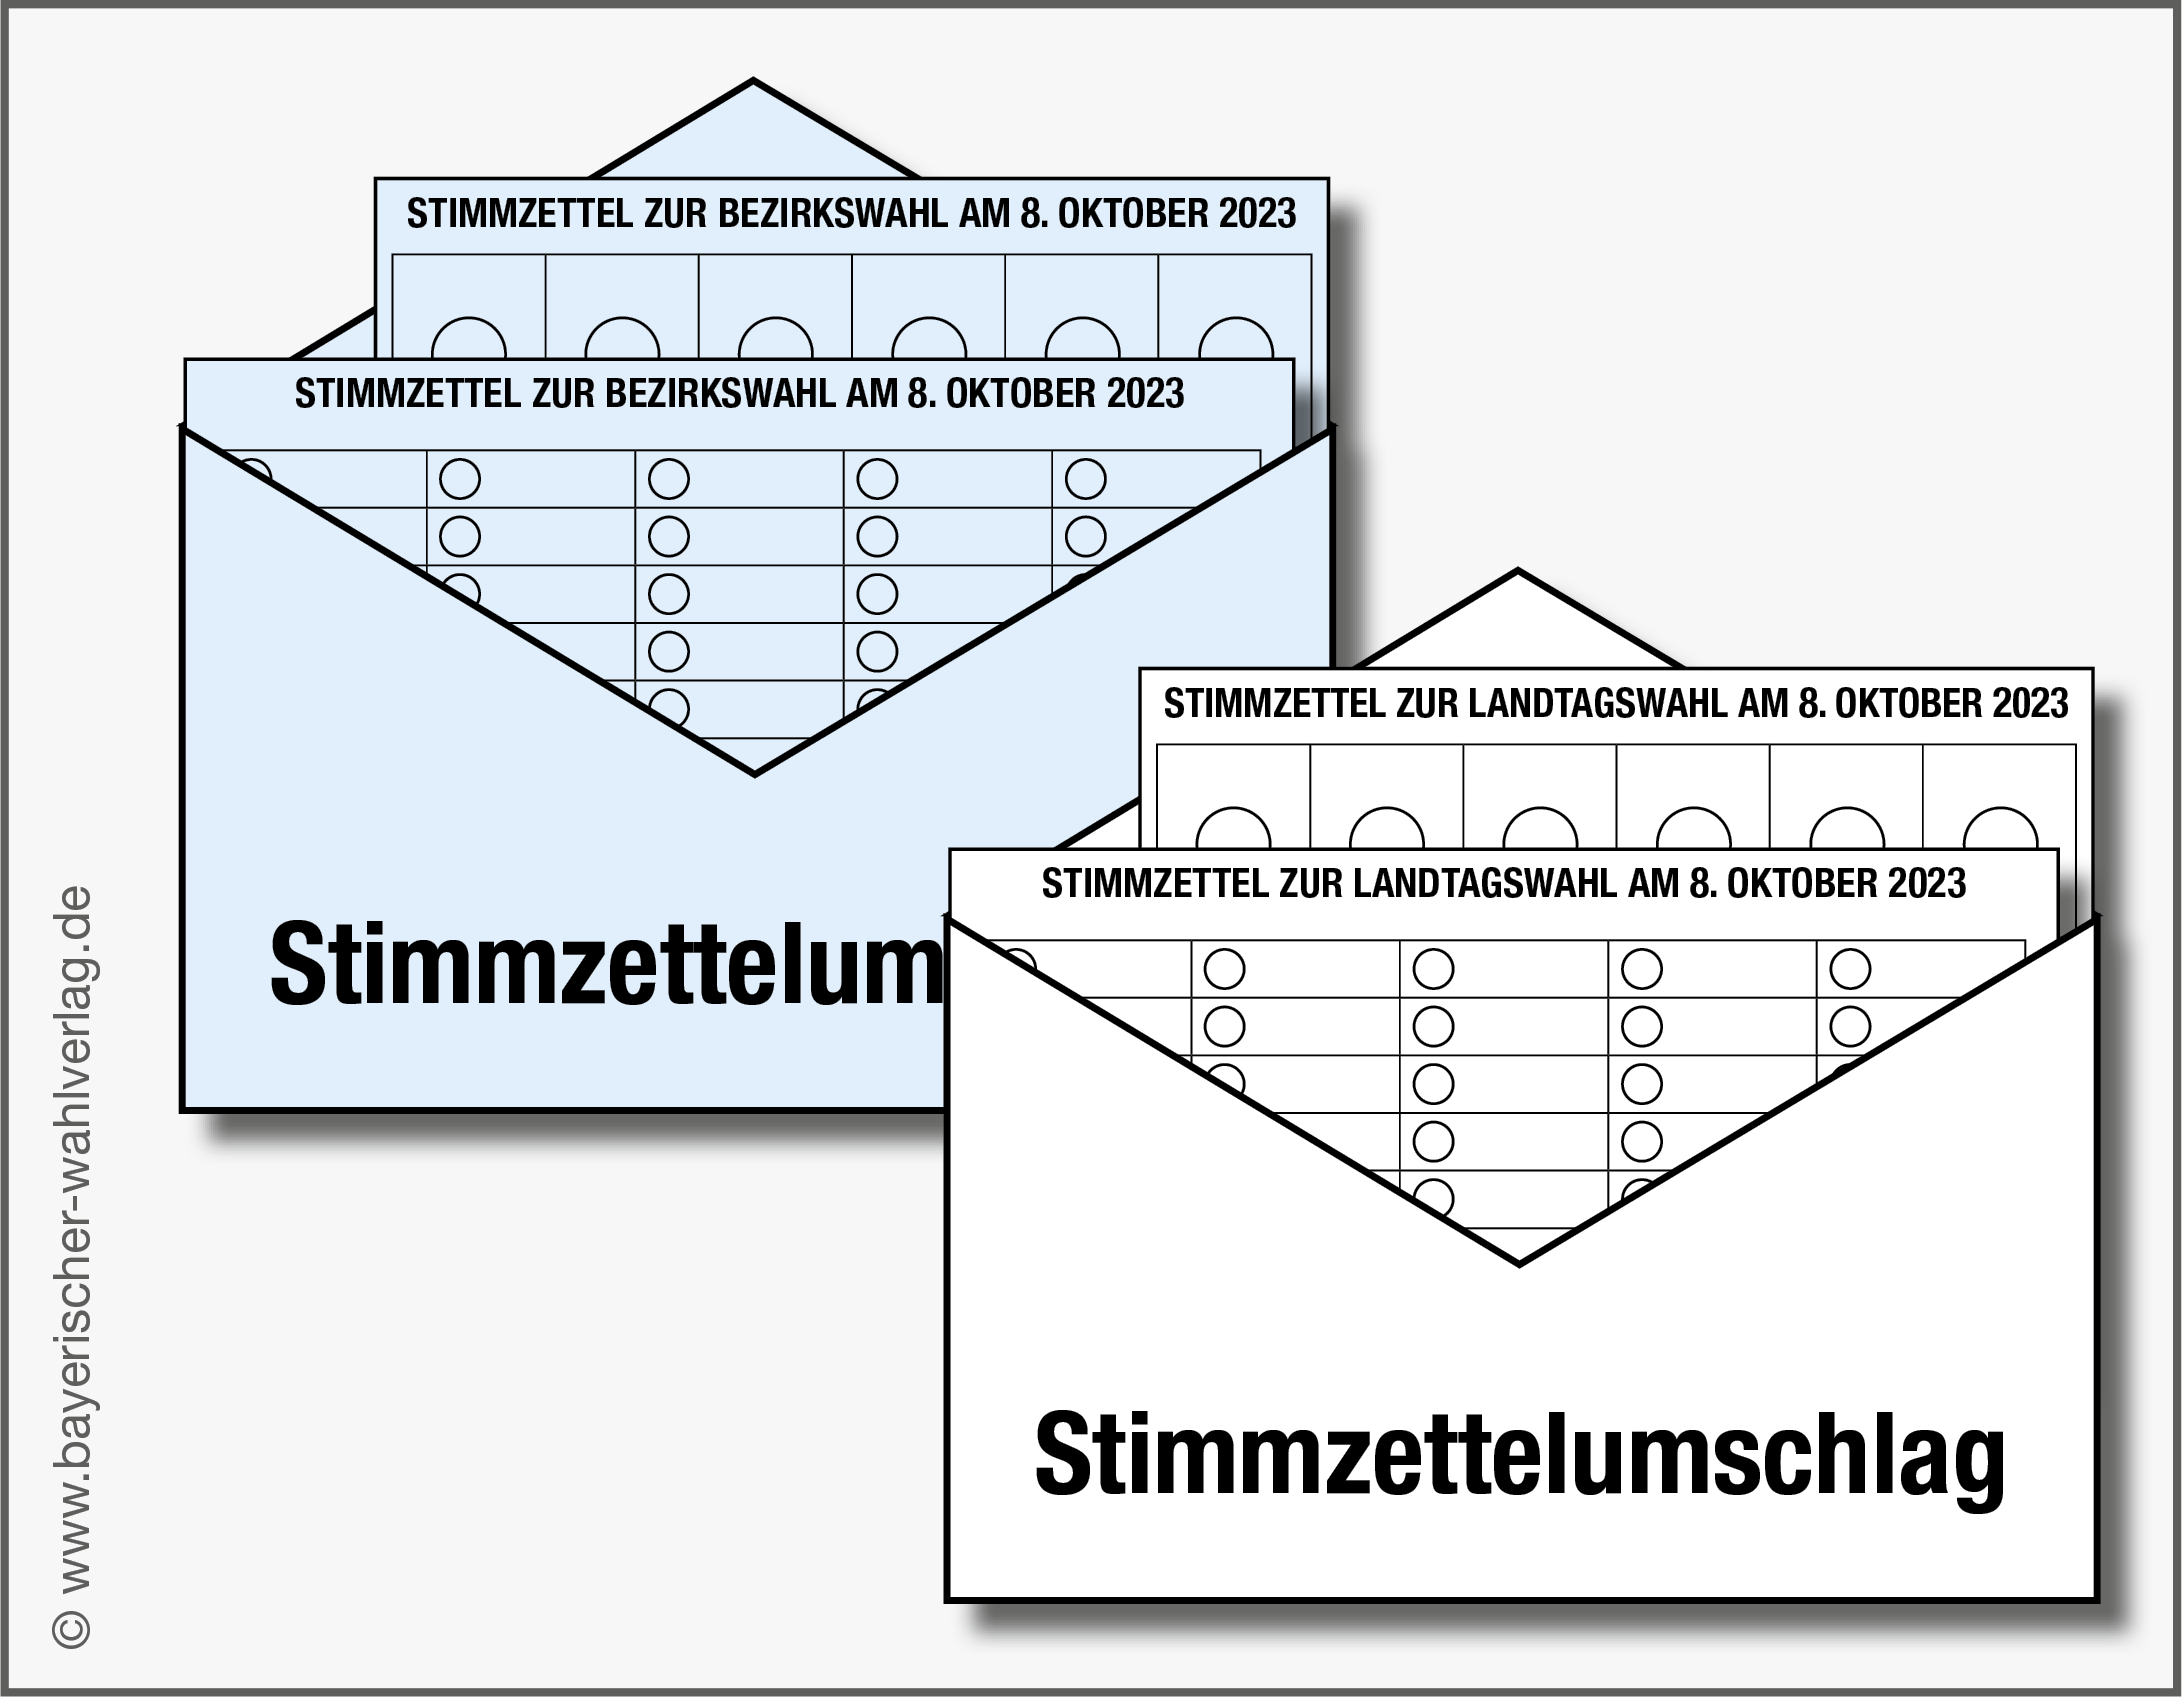 Landtags- und Bezirkswahl am 8.10.2023 - Briefwahl ab sofort möglich